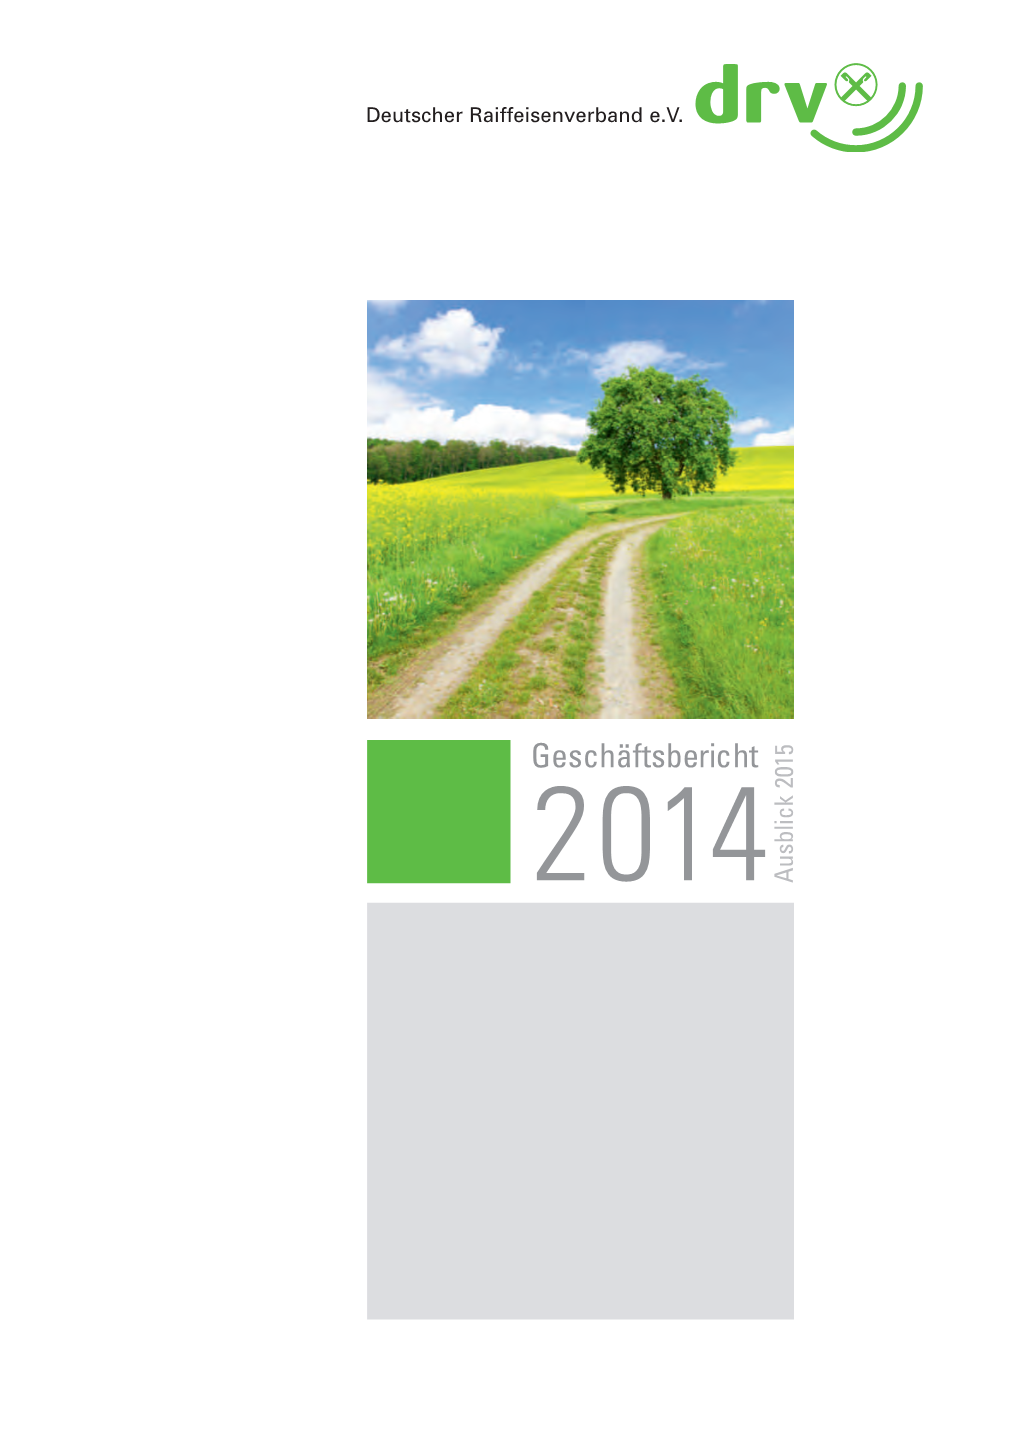 DRV-Geschäftsbericht 2014 | 3